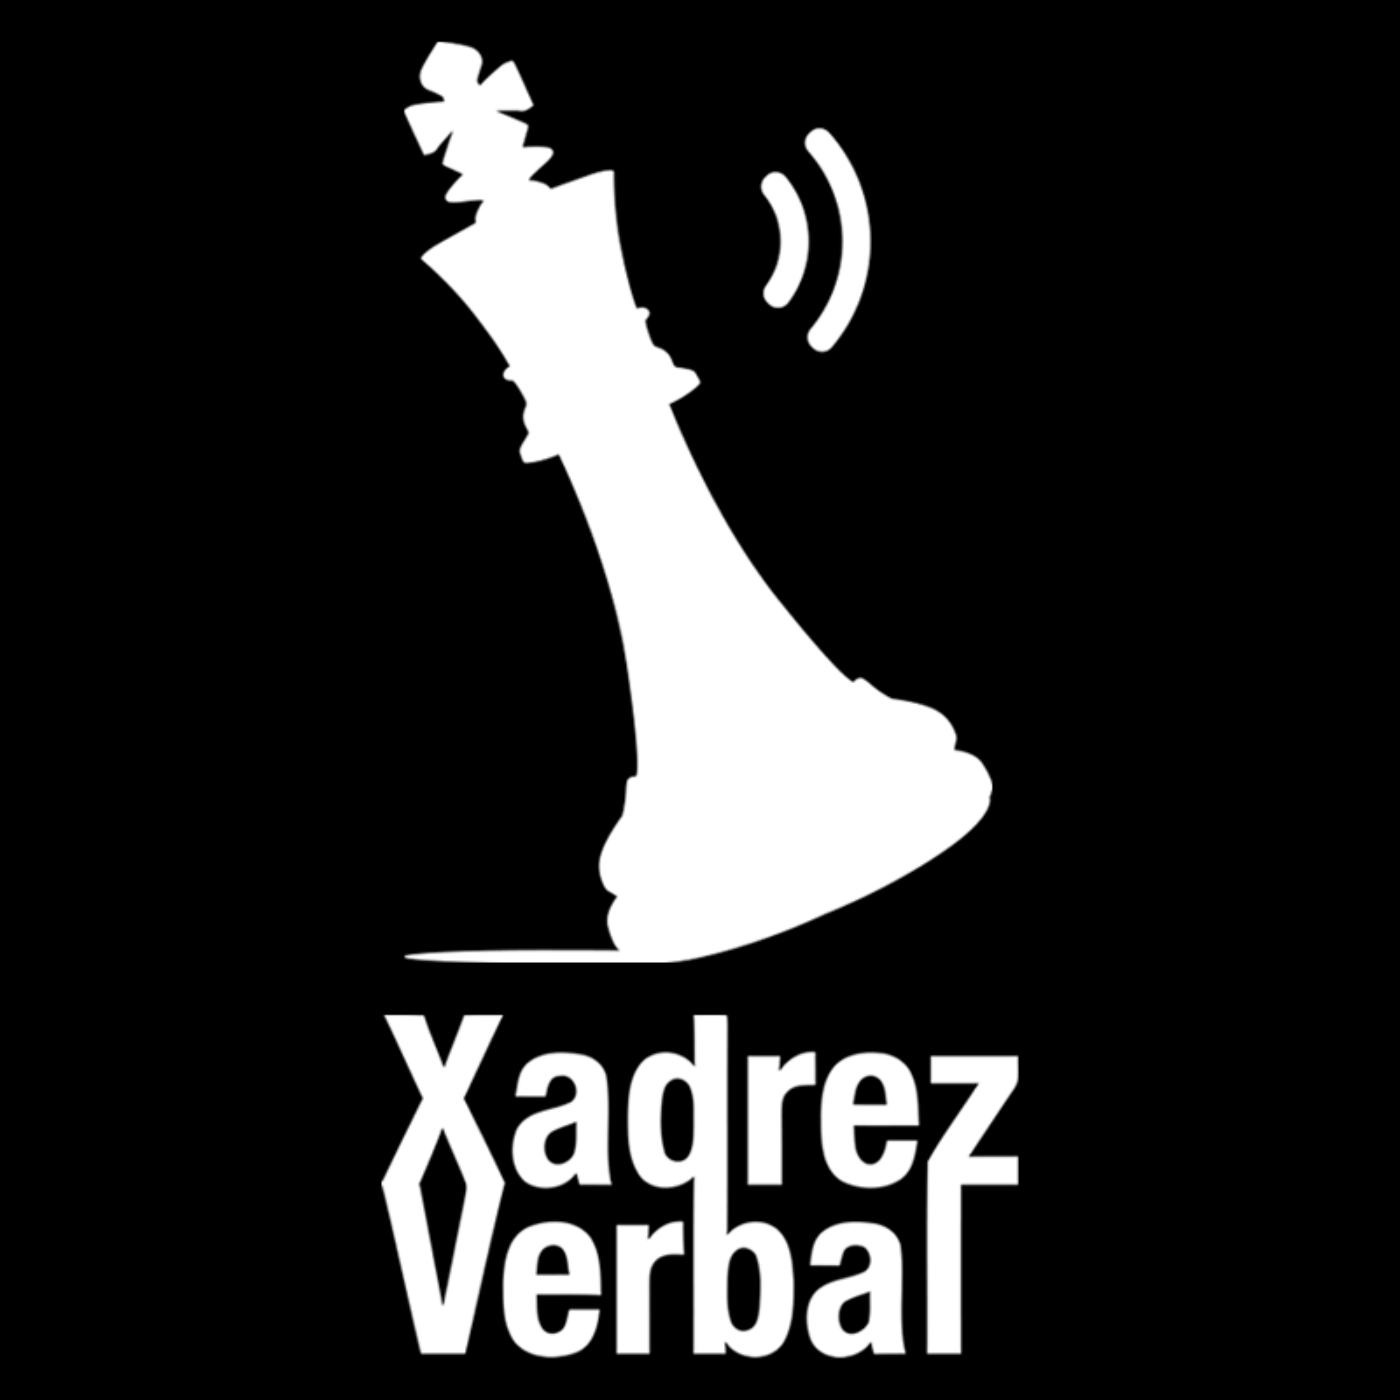 Xadrez Verbal Archives - Central 3